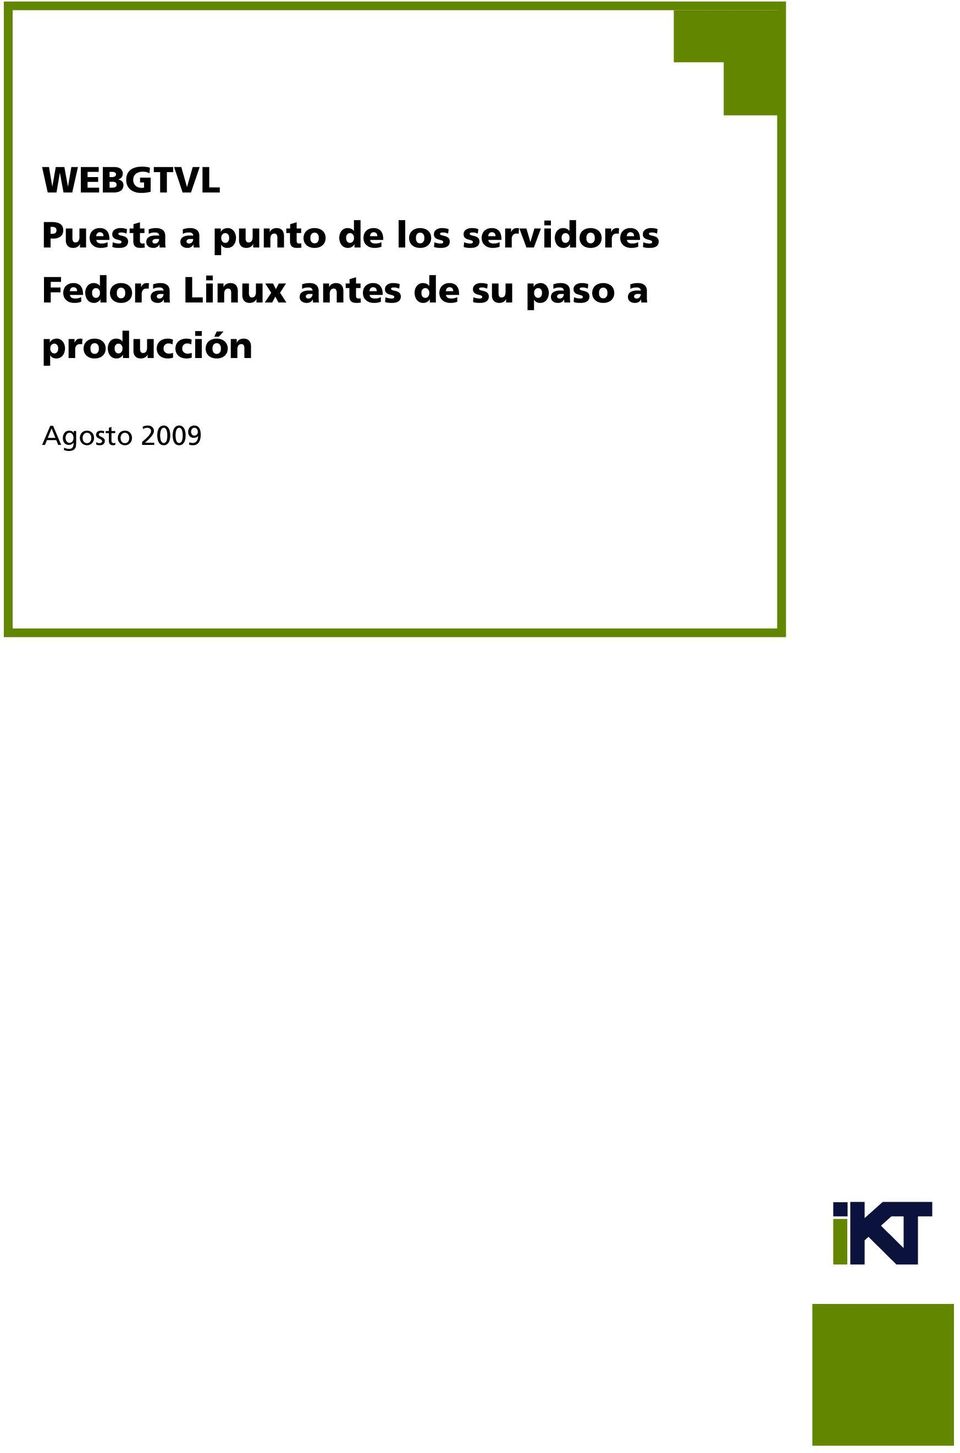 Fedora Linux antes de